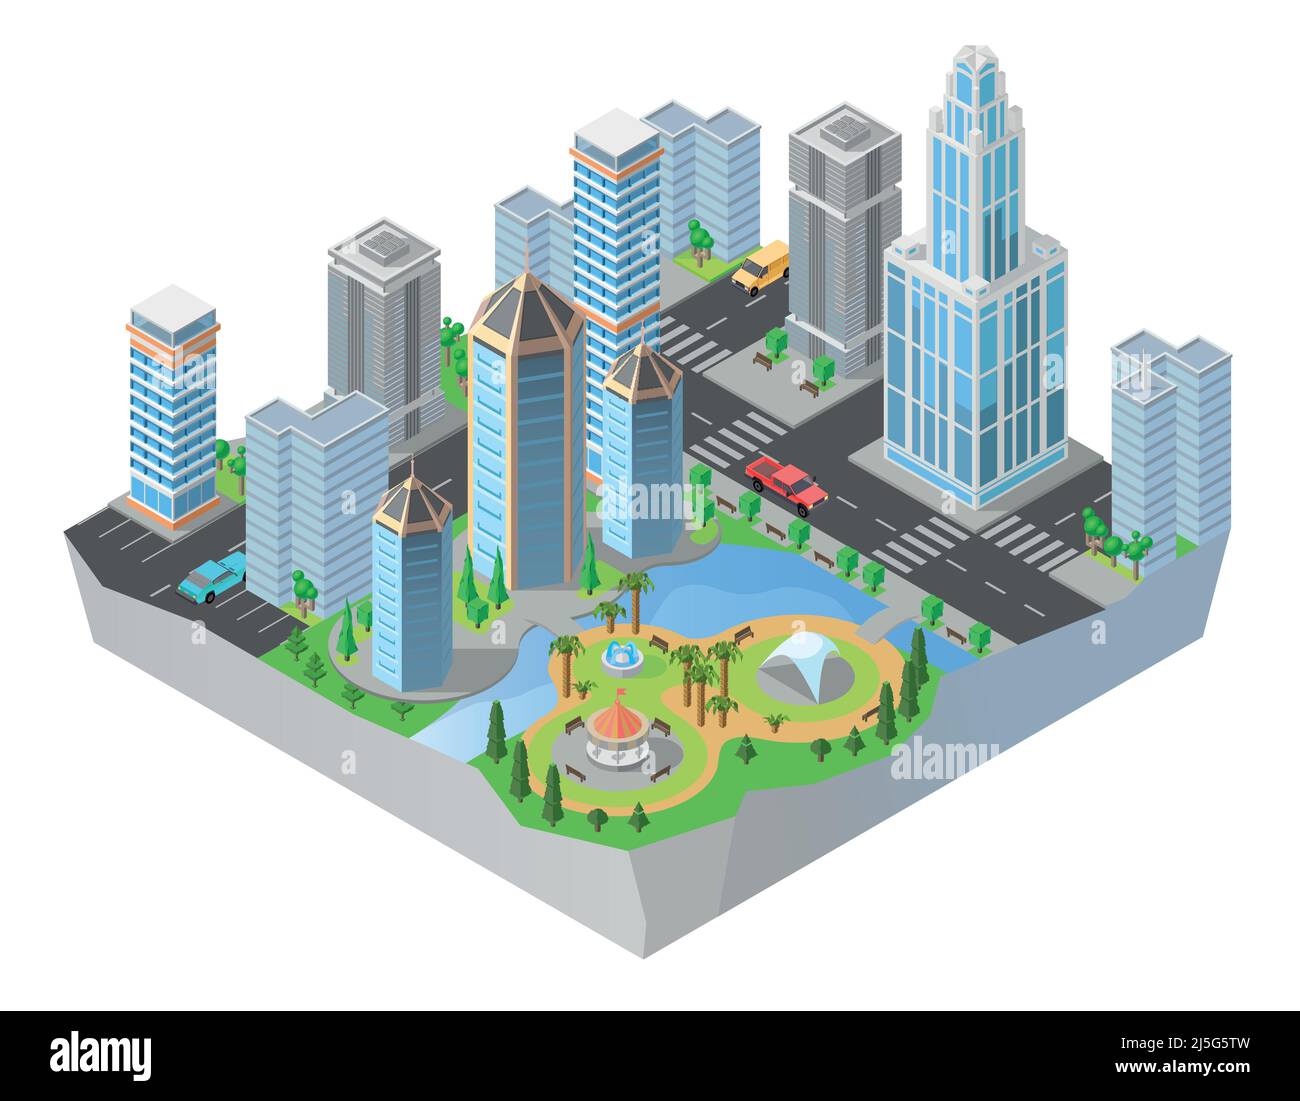 Vector 3D isometrische Stadt, Innenstadt mit modernen Wohngebäuden, Wolkenkratzern, Straßen, Park. Stadtbild, Stadtplan, zentraler Stadtteil mit Business Stock Vektor